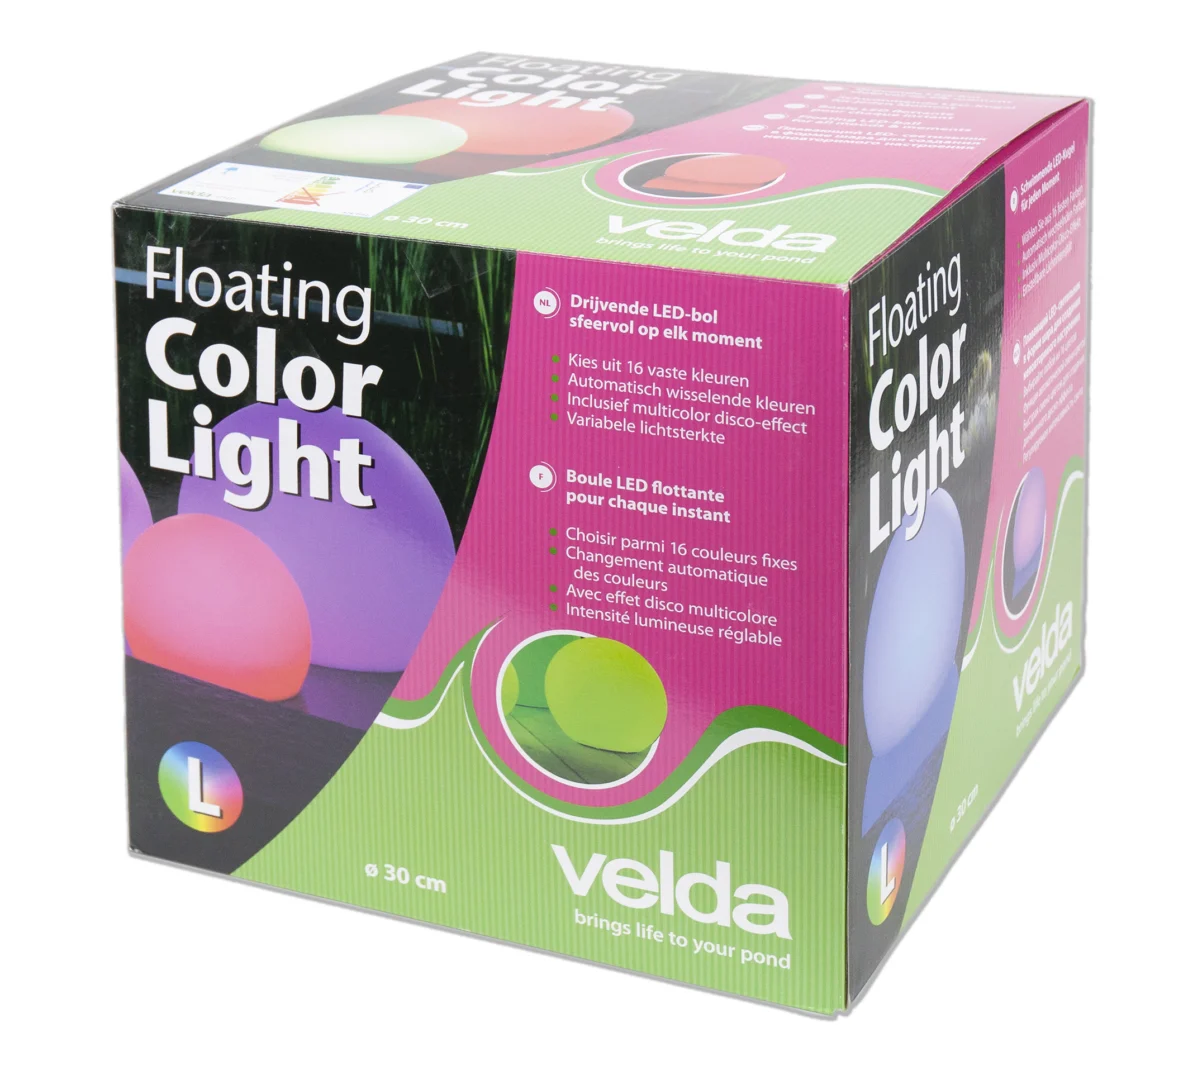 Floating Color Light